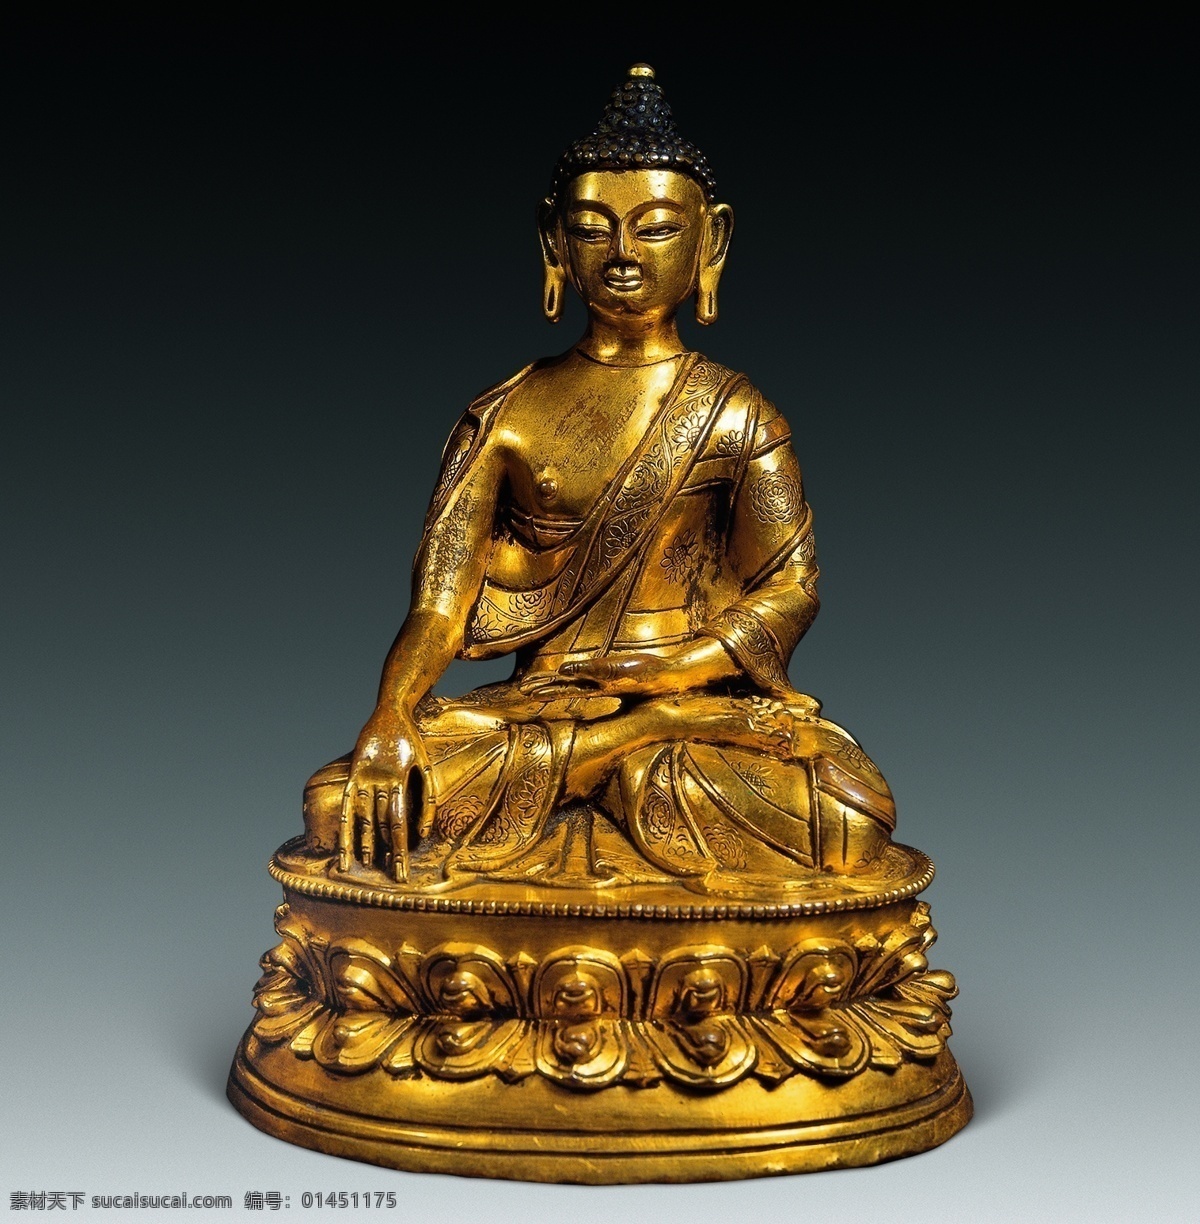 佛教 佛像 佛祖 高清 工艺品 铜 文化艺术 清 鎏金 释迦 摩尼 释迦摩尼像 宗教 宗教信仰